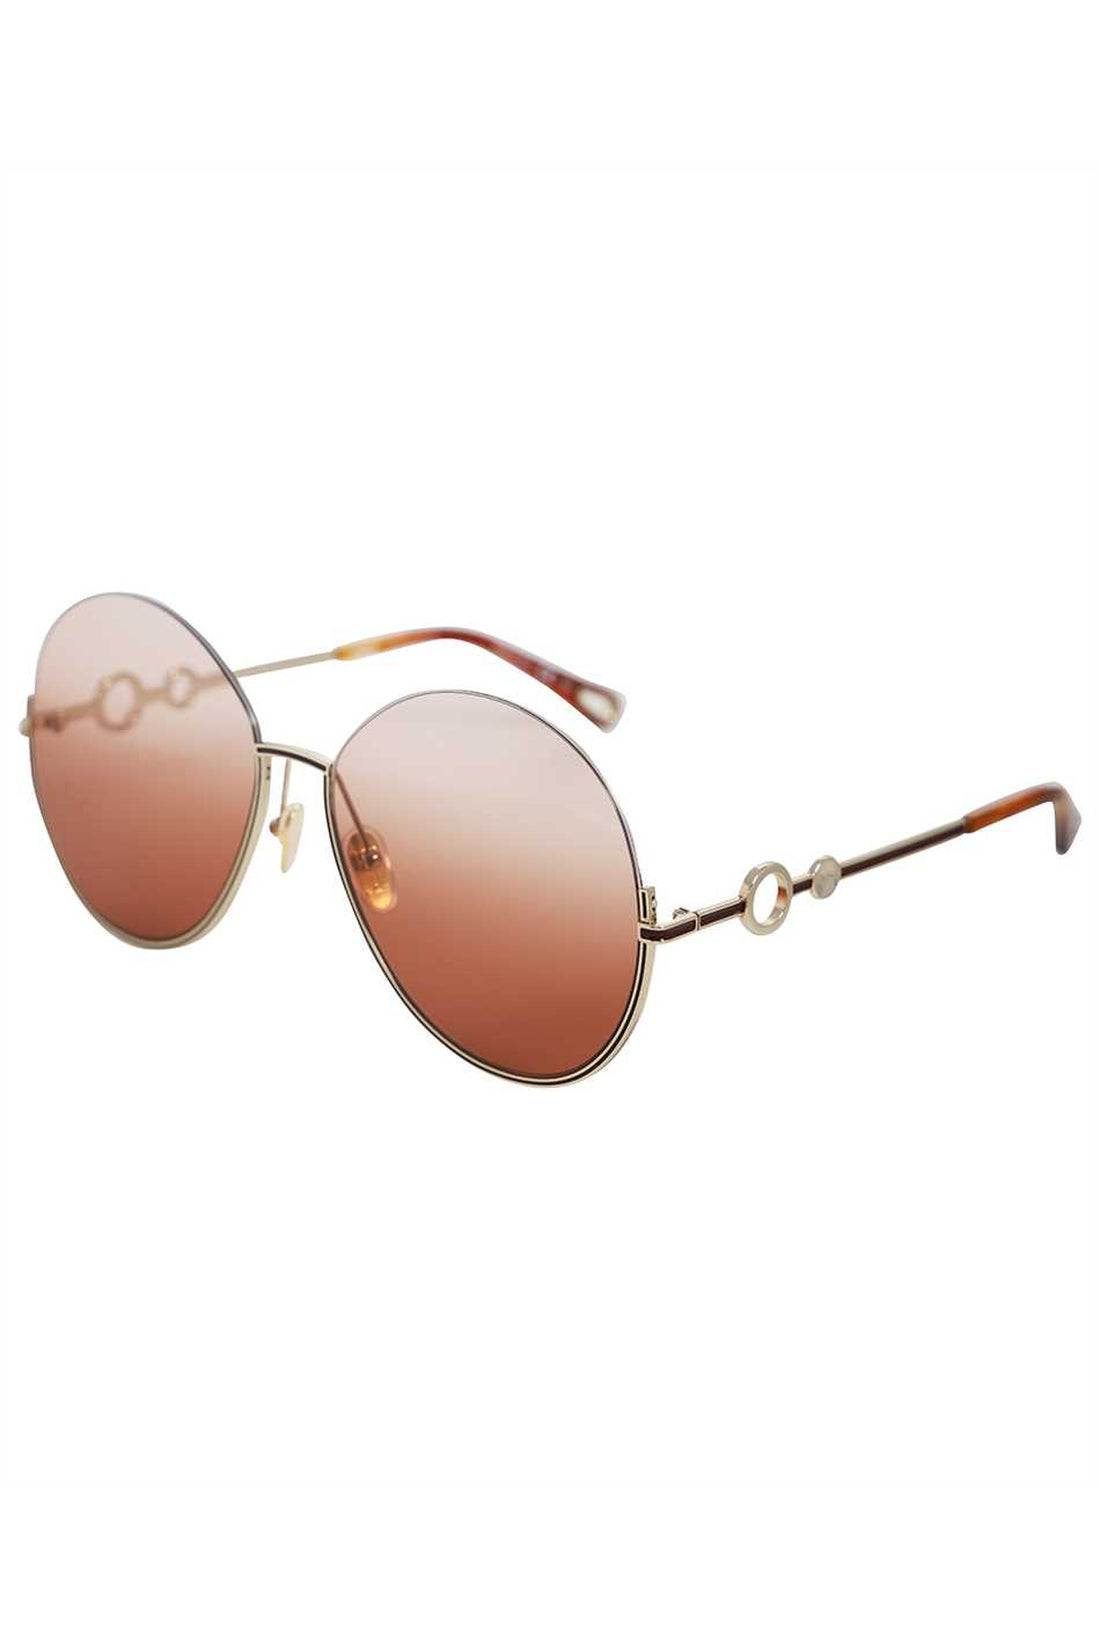 Chloé-OUTLET-SALE-Round frame sunglasses-ARCHIVIST